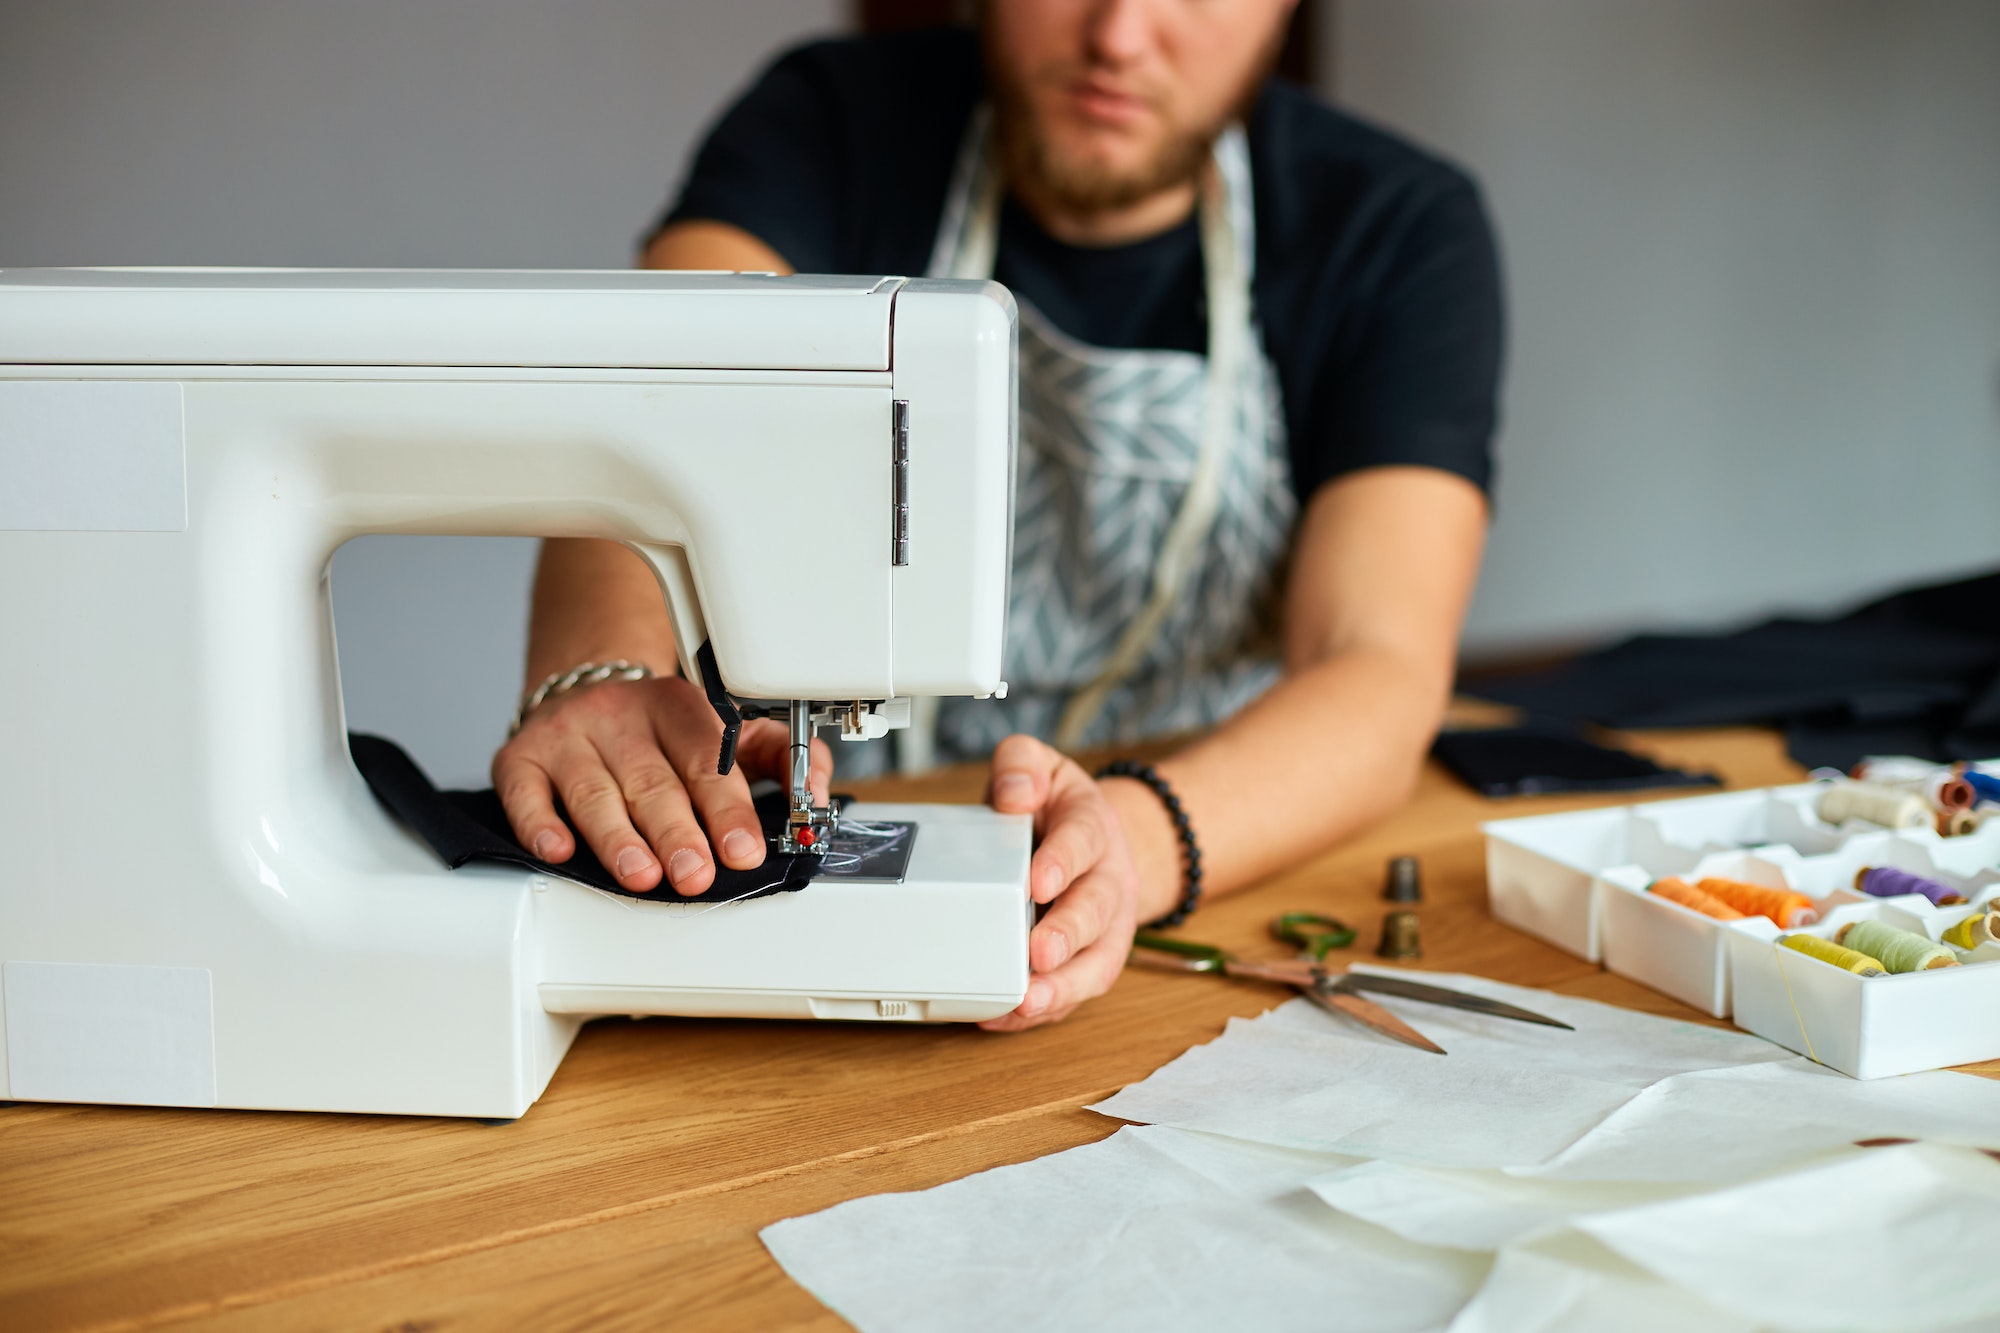 L'artisanat du textile, entre couture et broderie